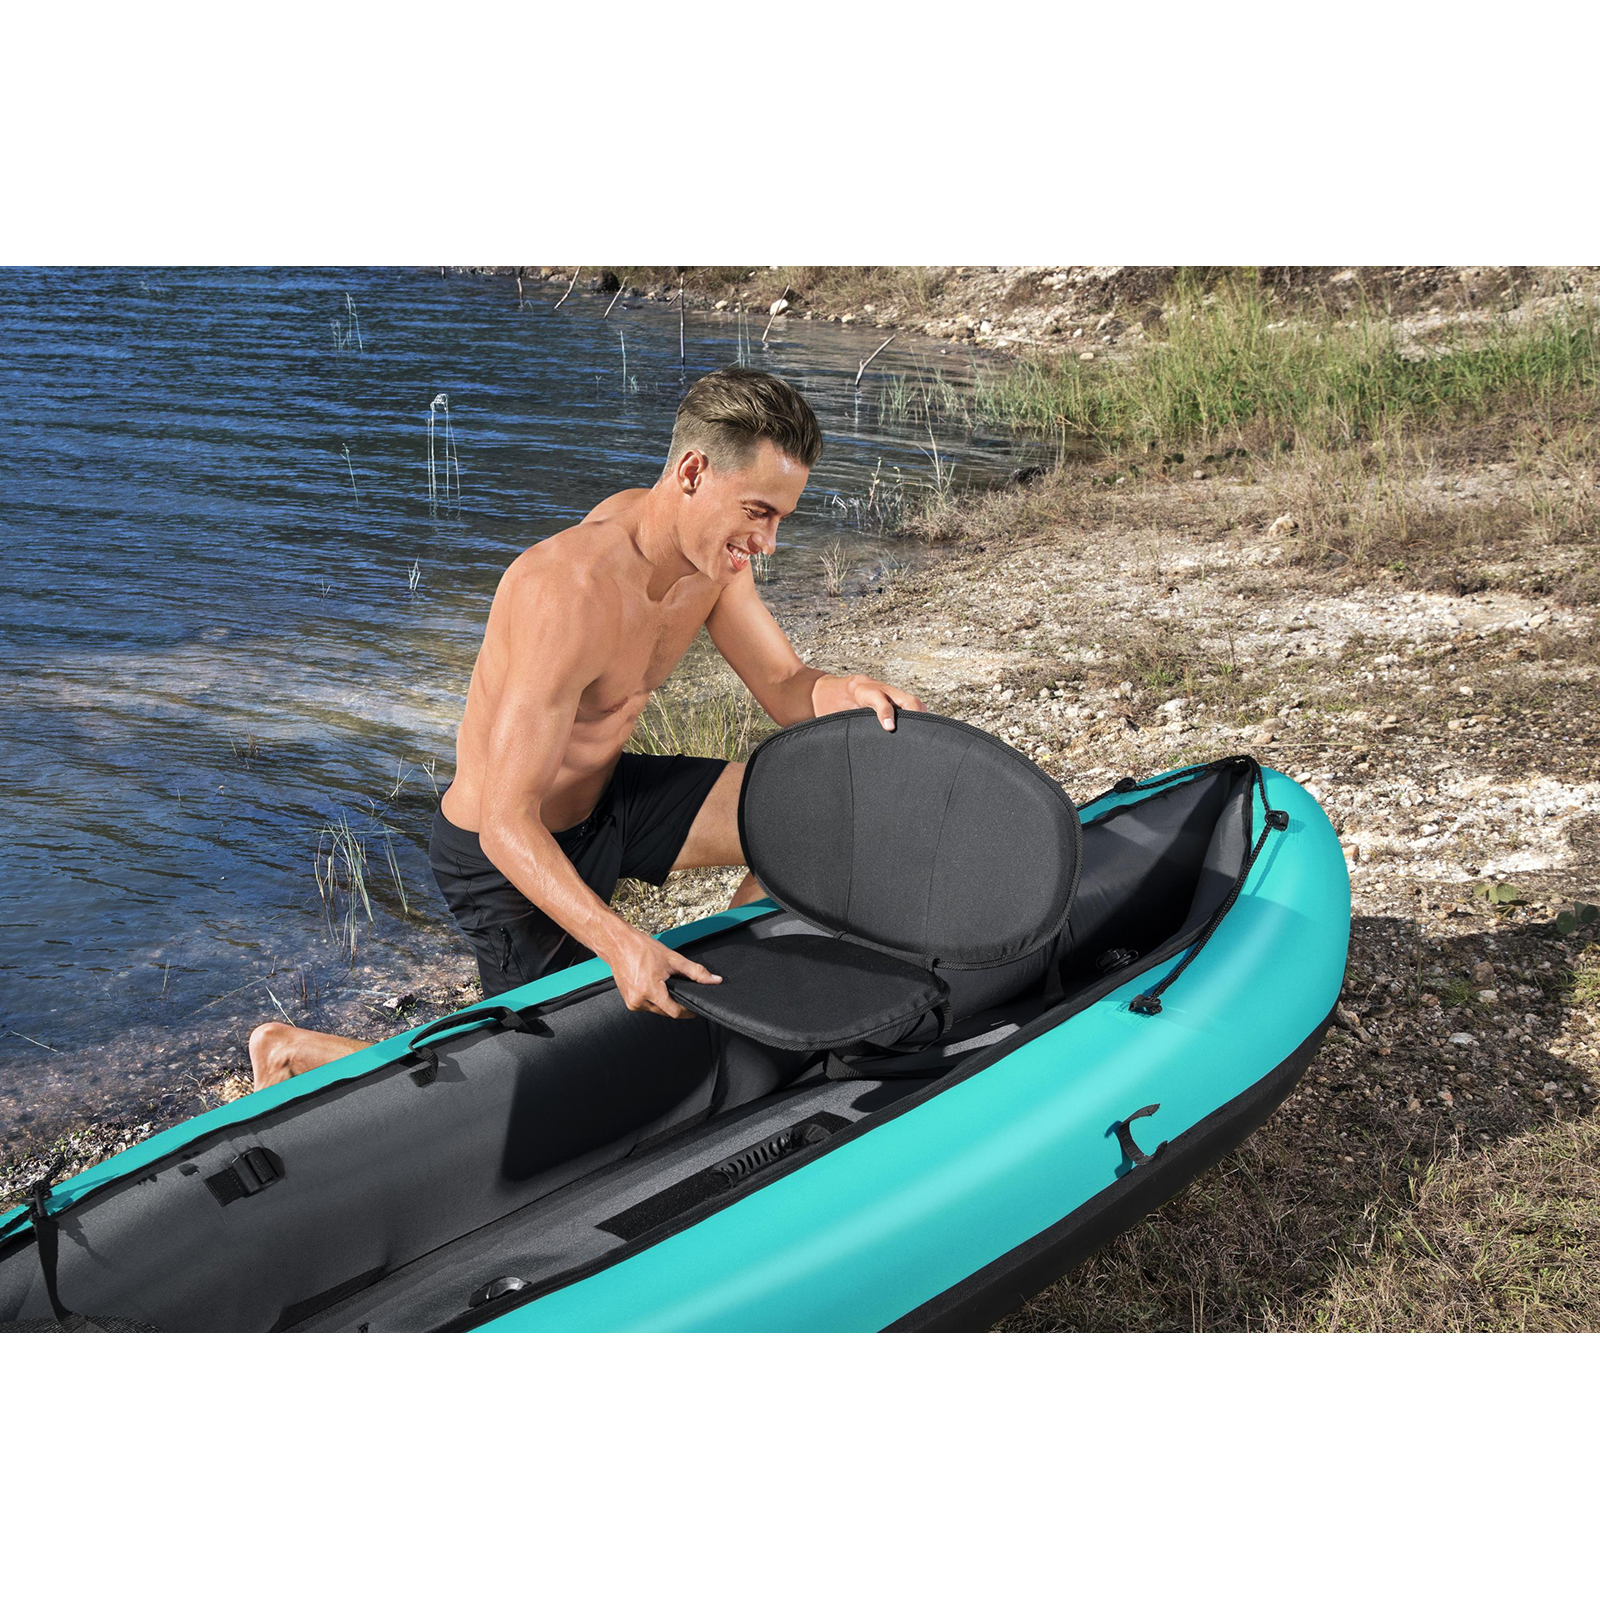 Kayak Hinchable Bestway Hydro-force Ventura 280x86 Cm 1 Persona Con Inflador Y Remo